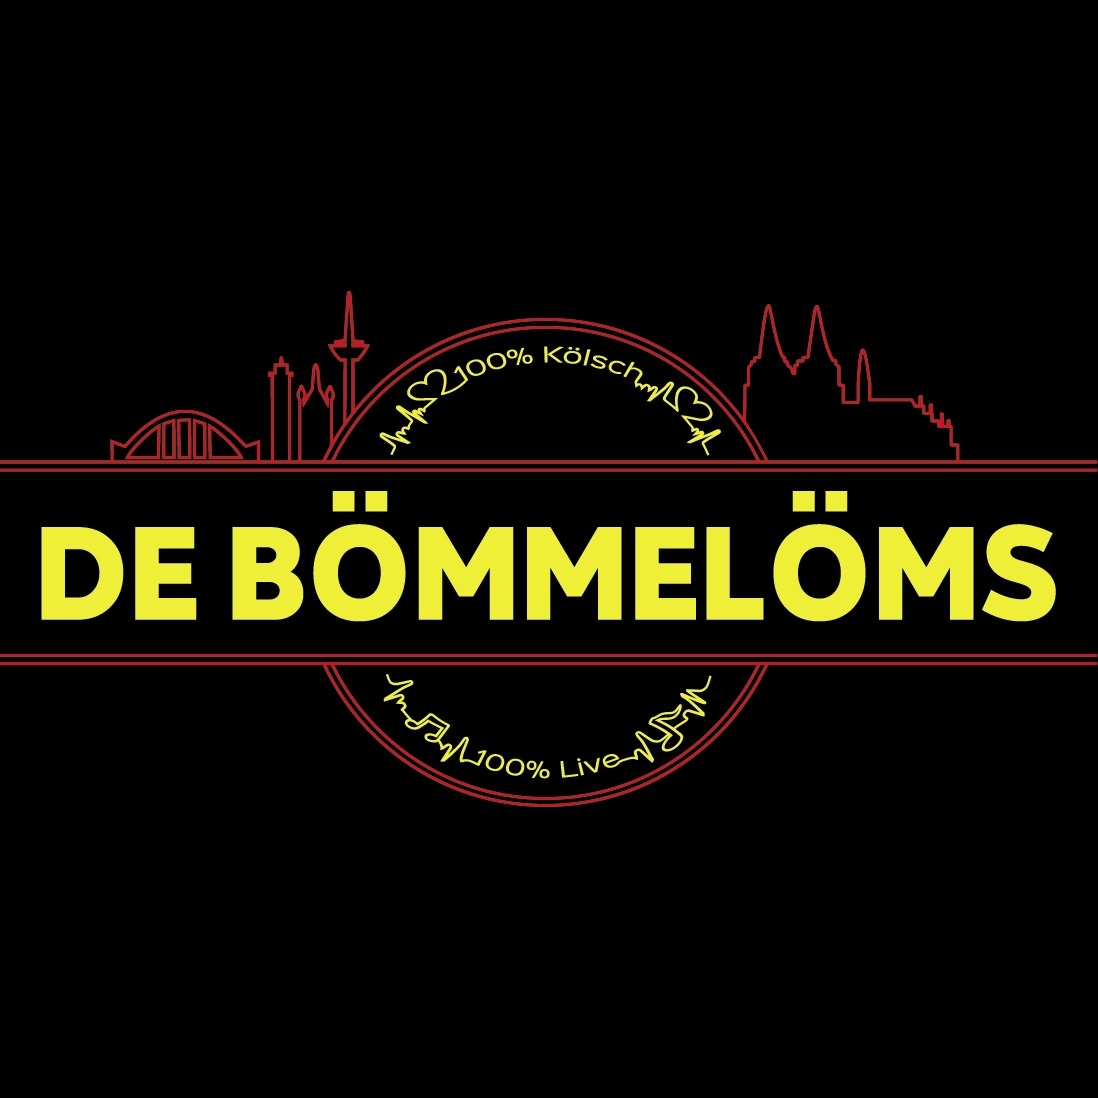 (c) Boemmeloems.de